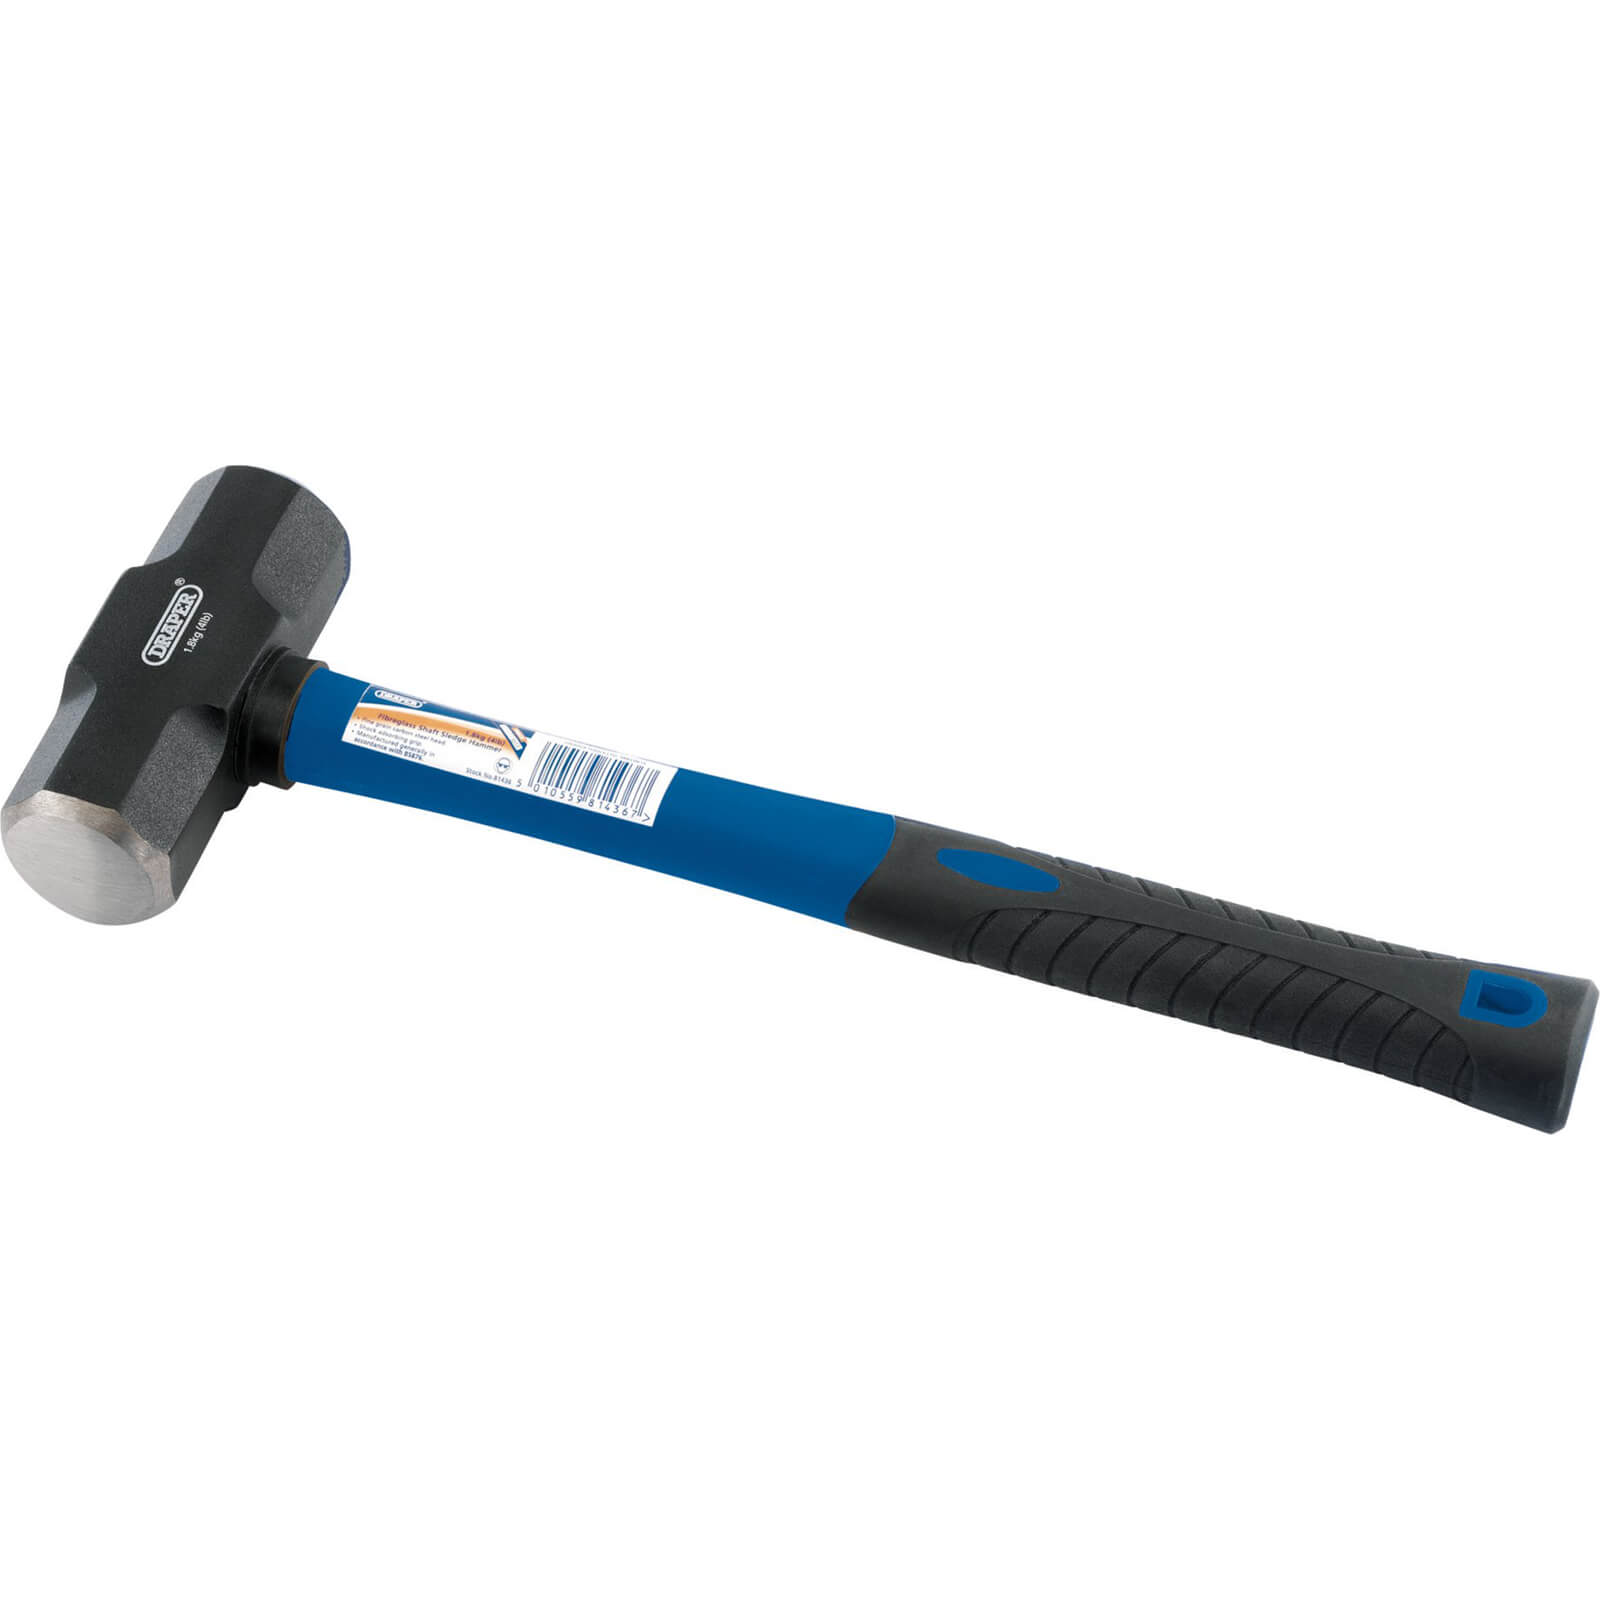 Image of Draper Short Handle Sledge Hammer 1.8kg